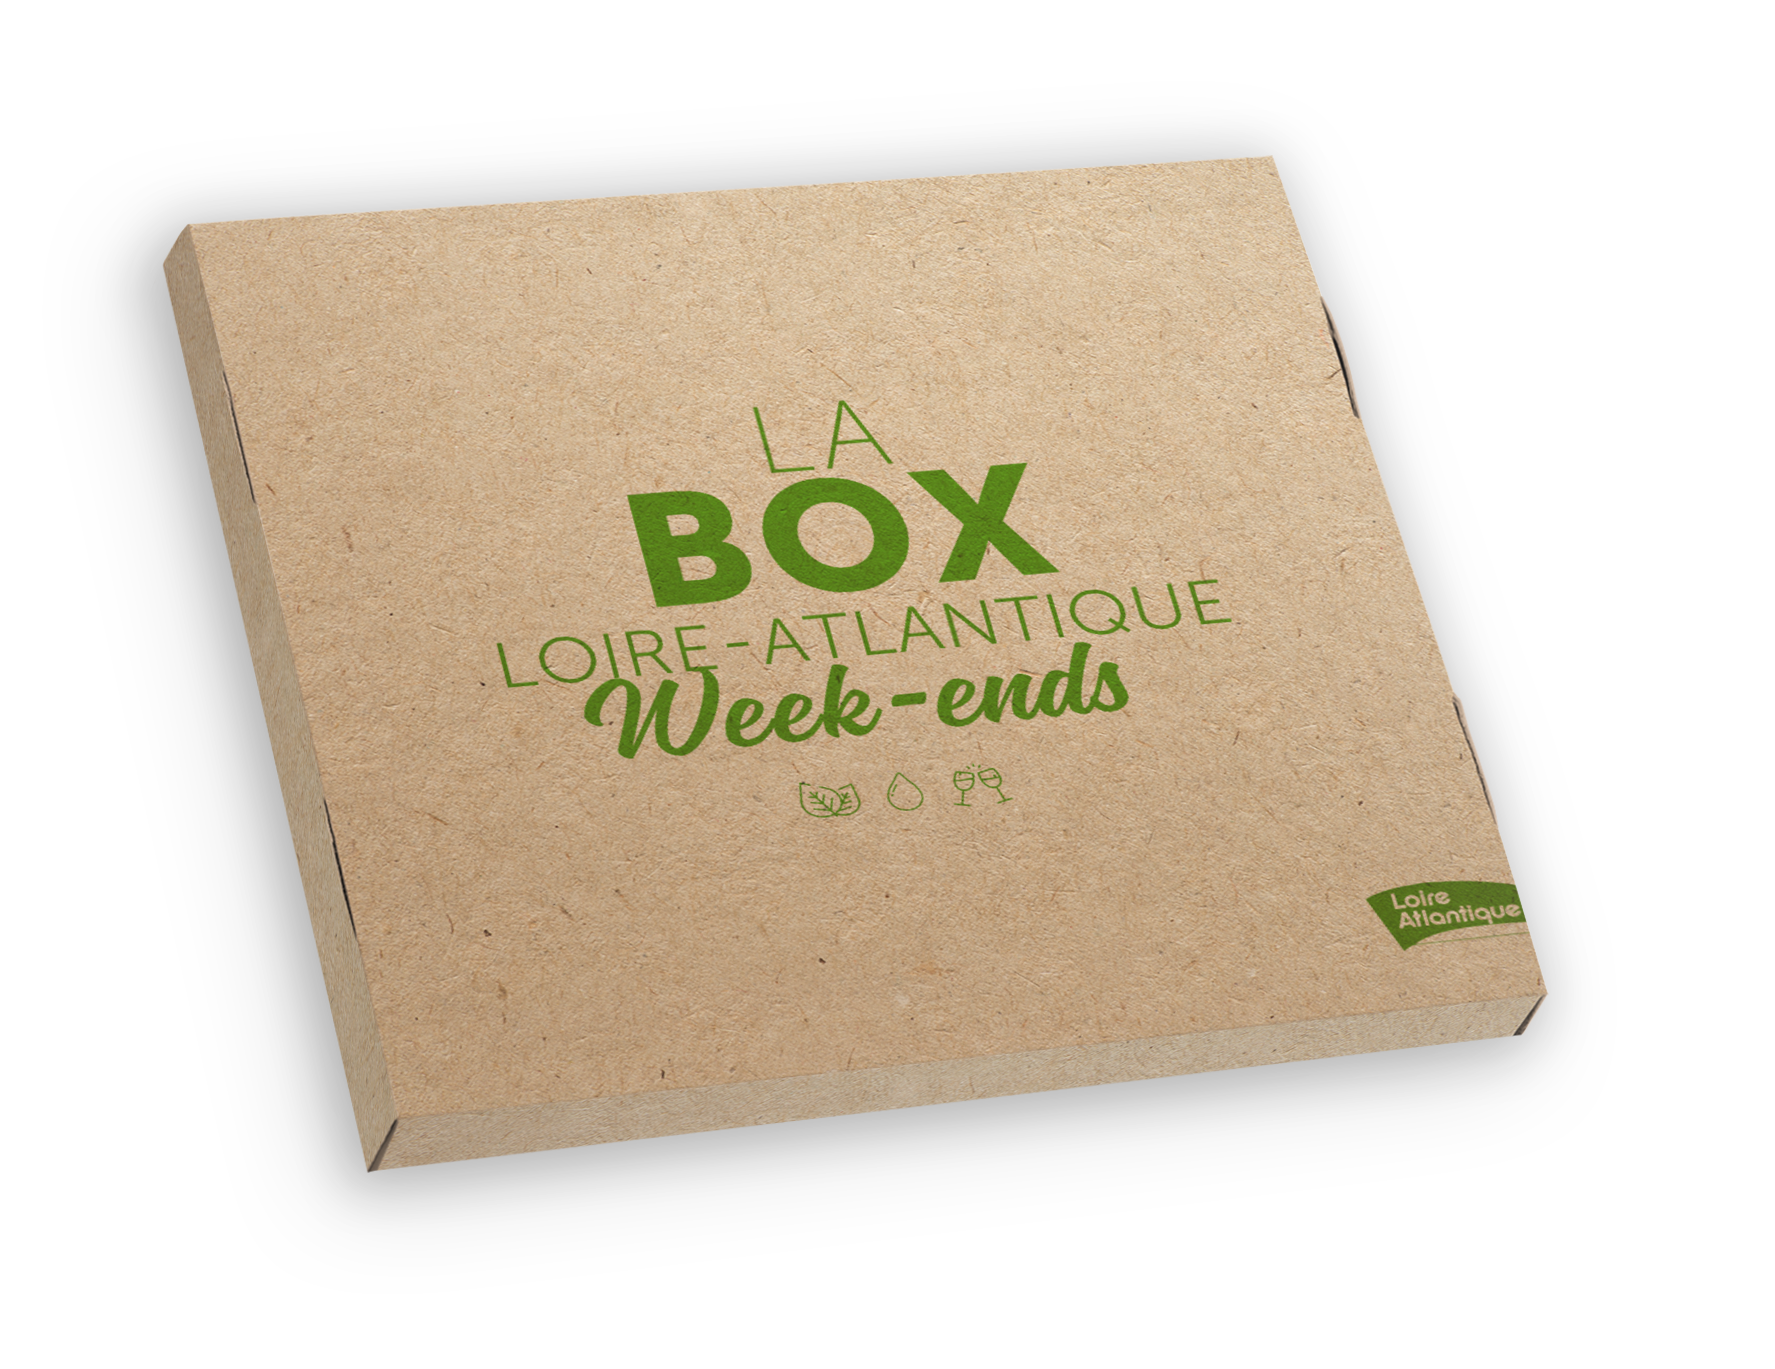 Coffret cadeau LA Box Loire-Atlantique Week-ends 2022-2024